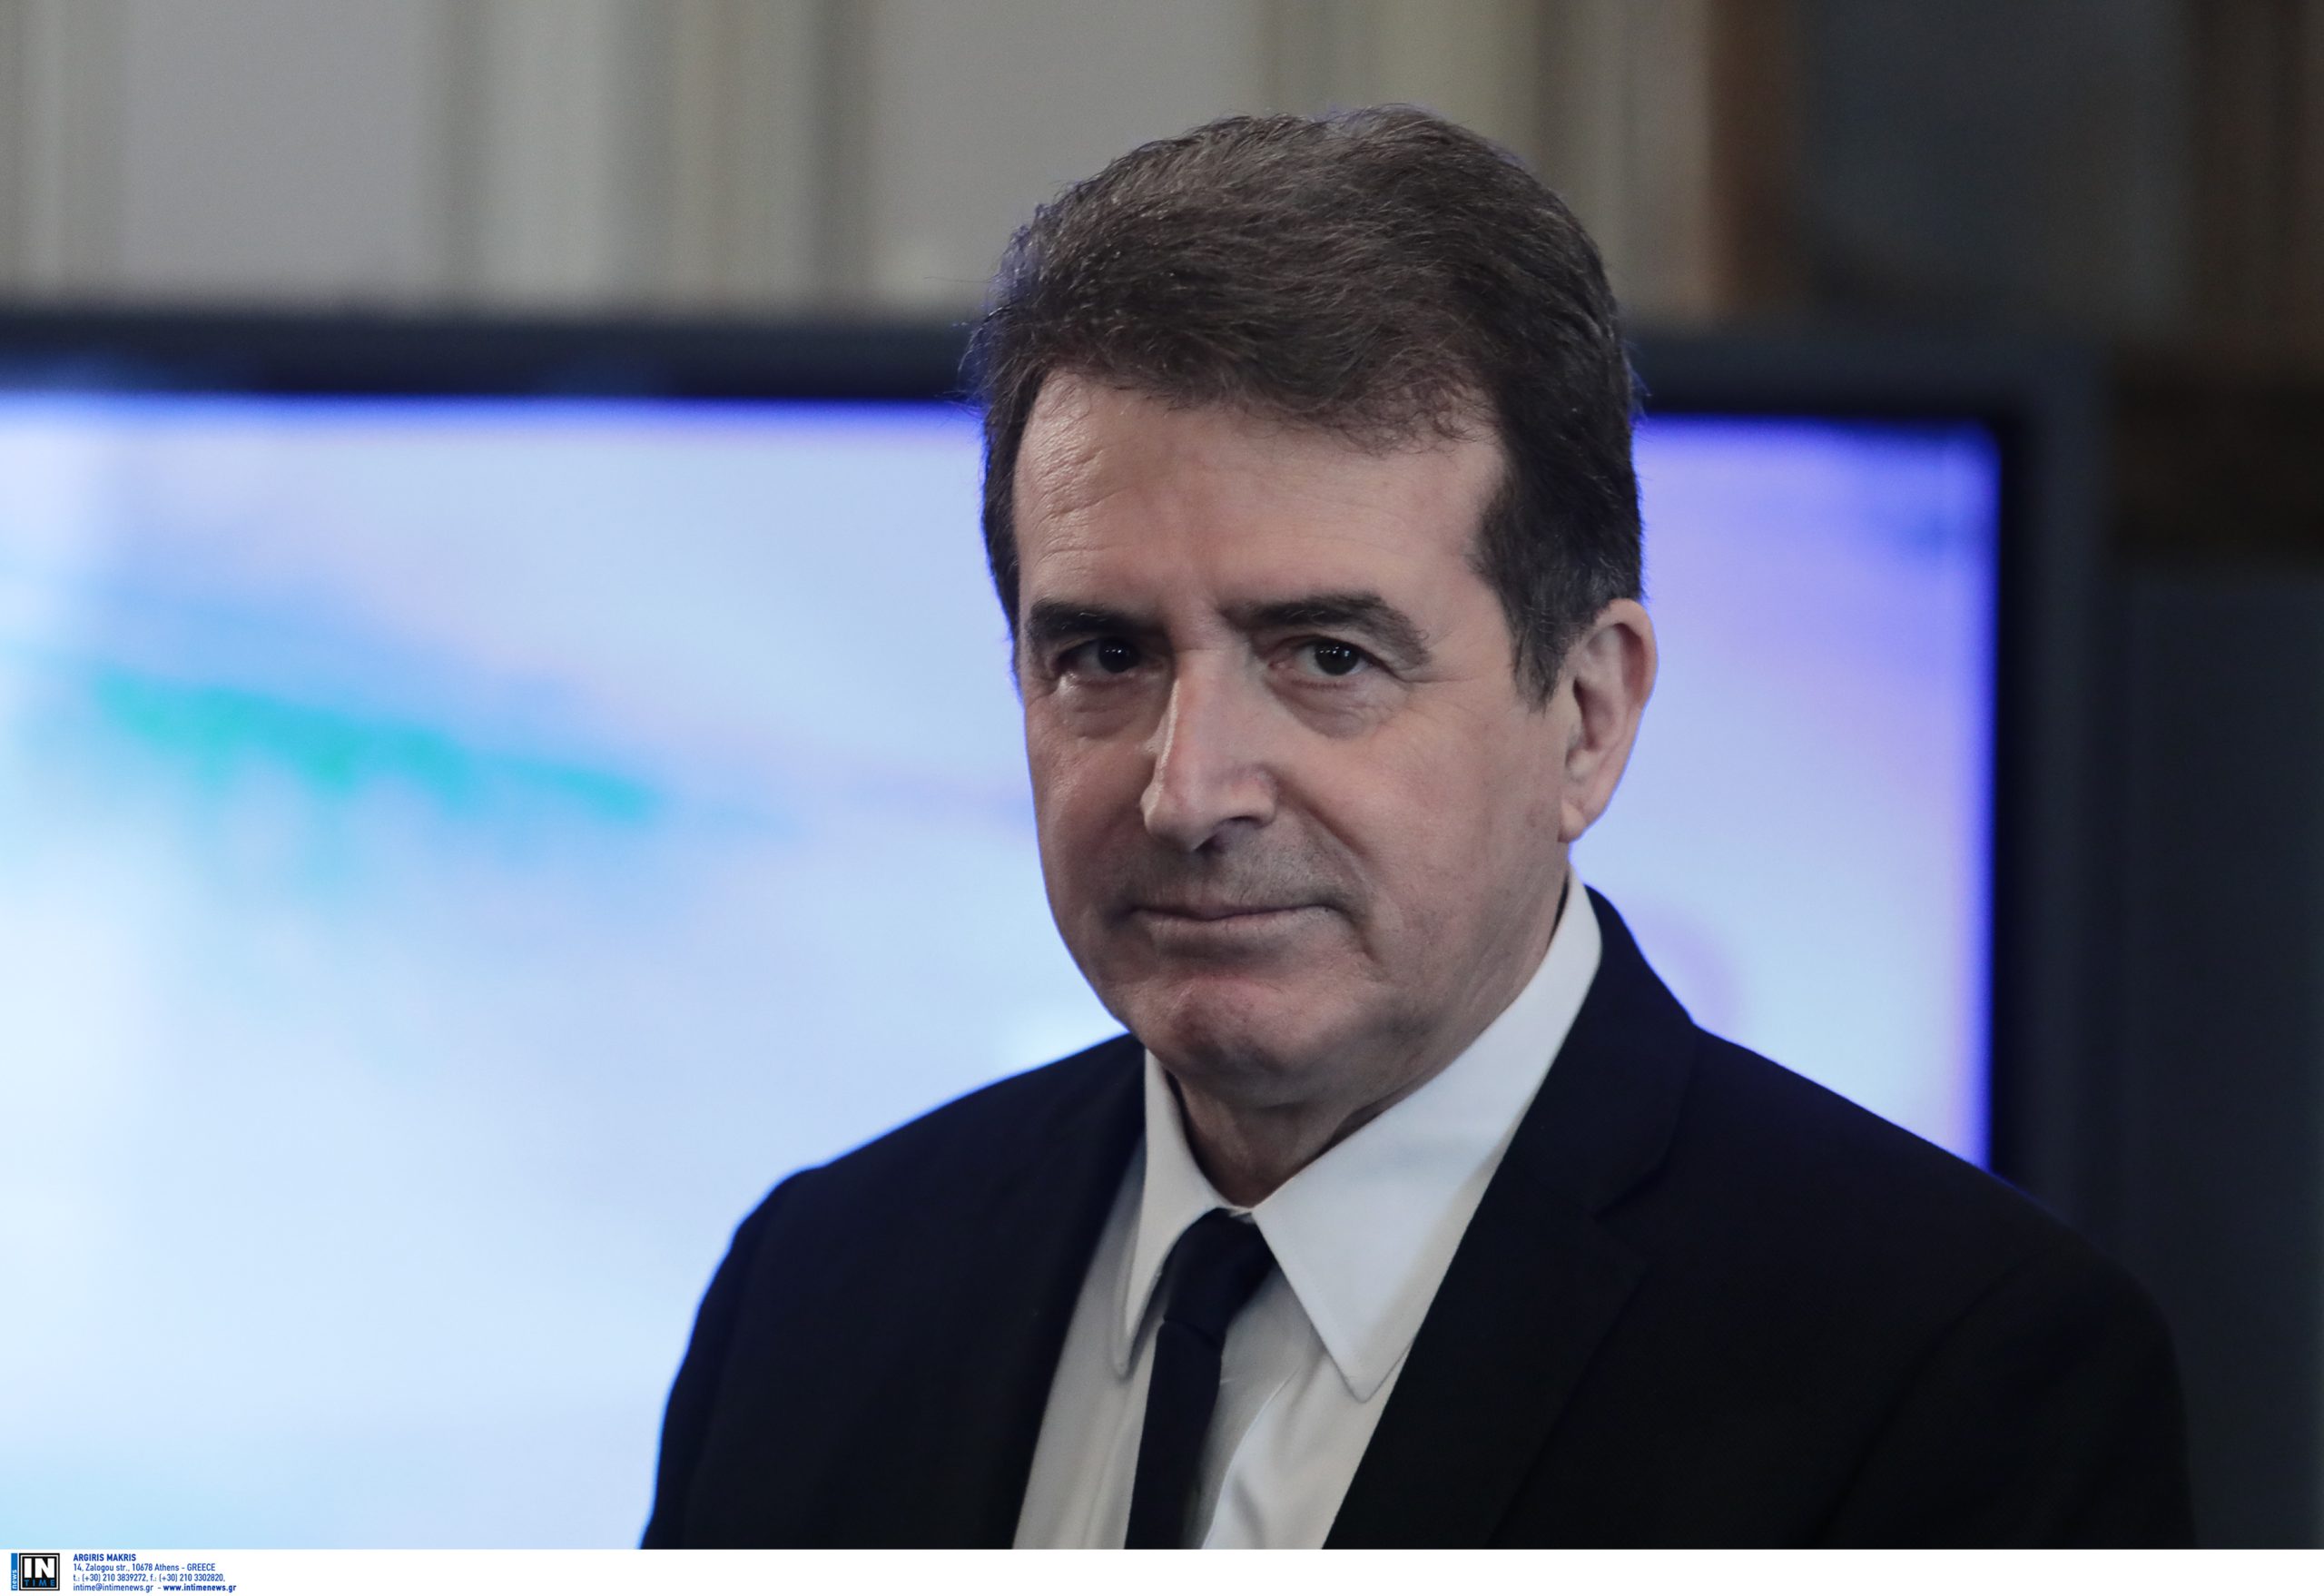 Μ.Χρυσοχοΐδης: «Είναι πολύ ταραγμένη περίοδος για να παίζουμε με τη δημοκρατία»